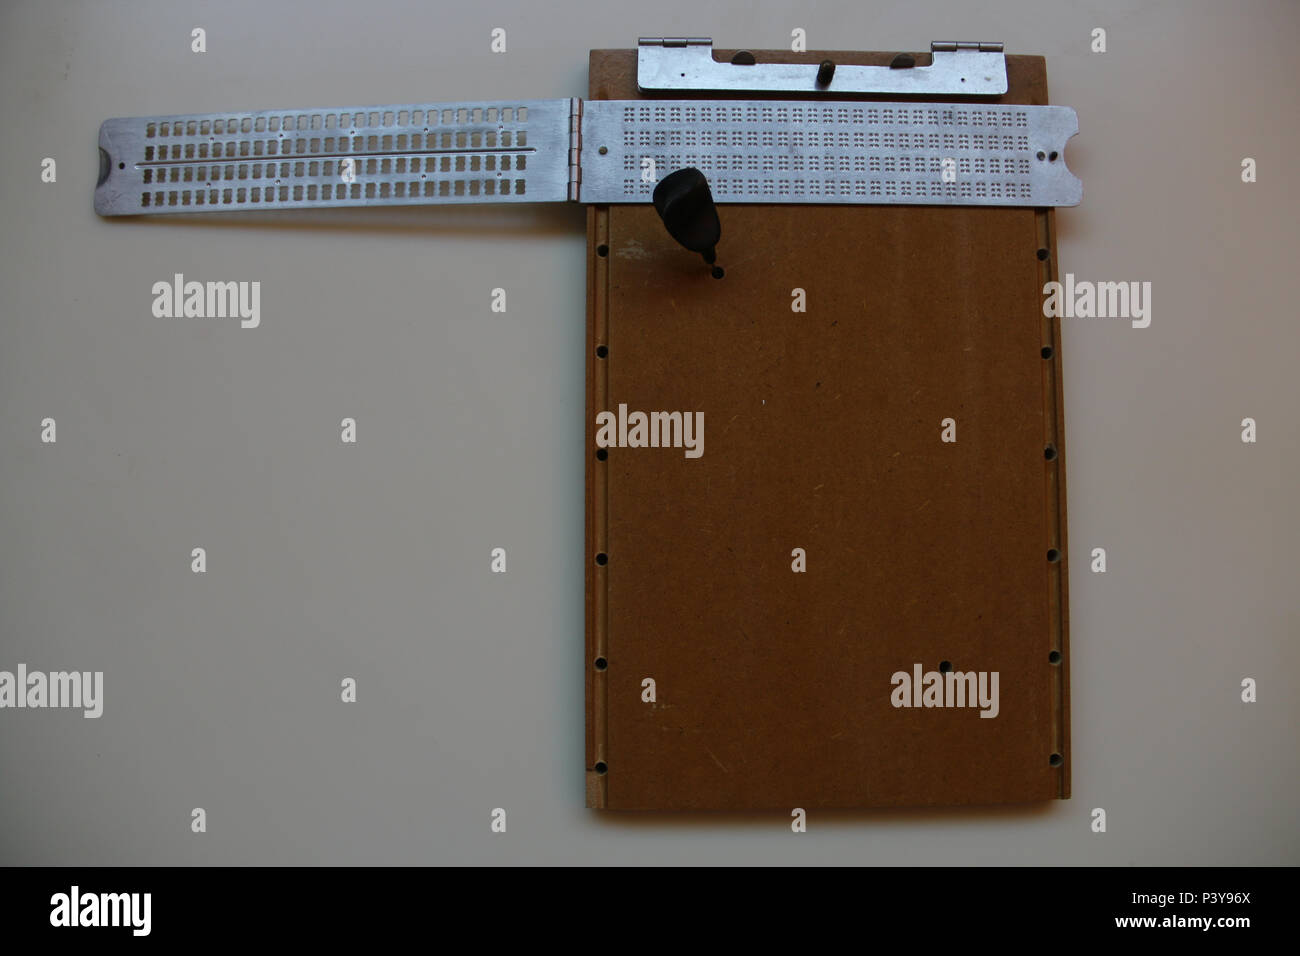 Reglete que serve para fazer os símbolos de letras e números para braille. Stock Photo